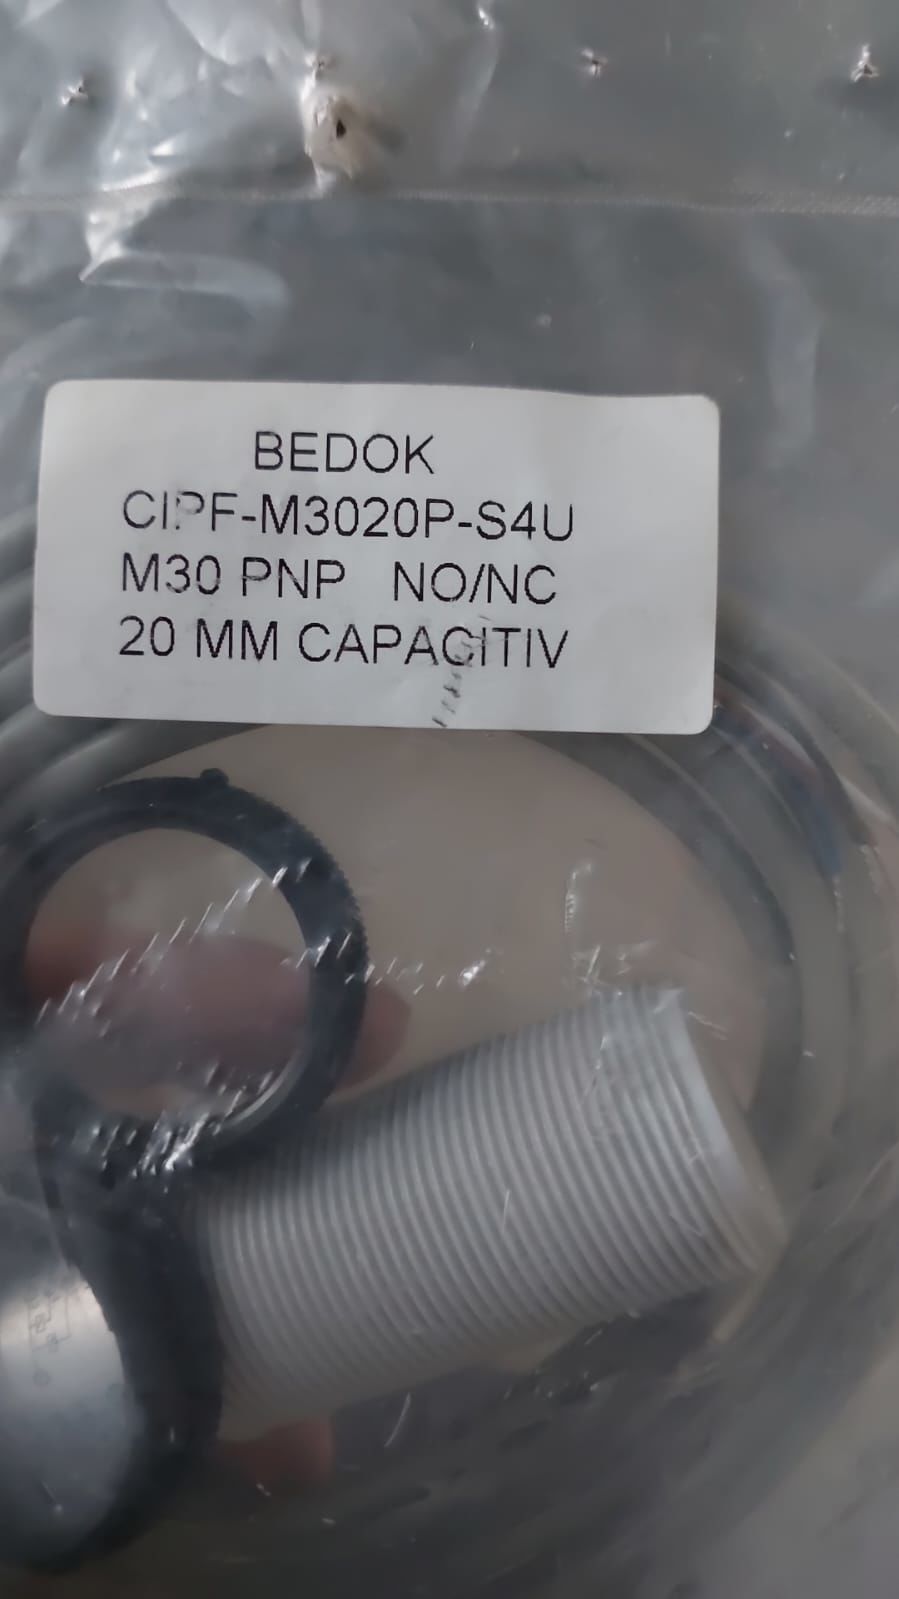 BEDOK CIPF-M3020P-S4